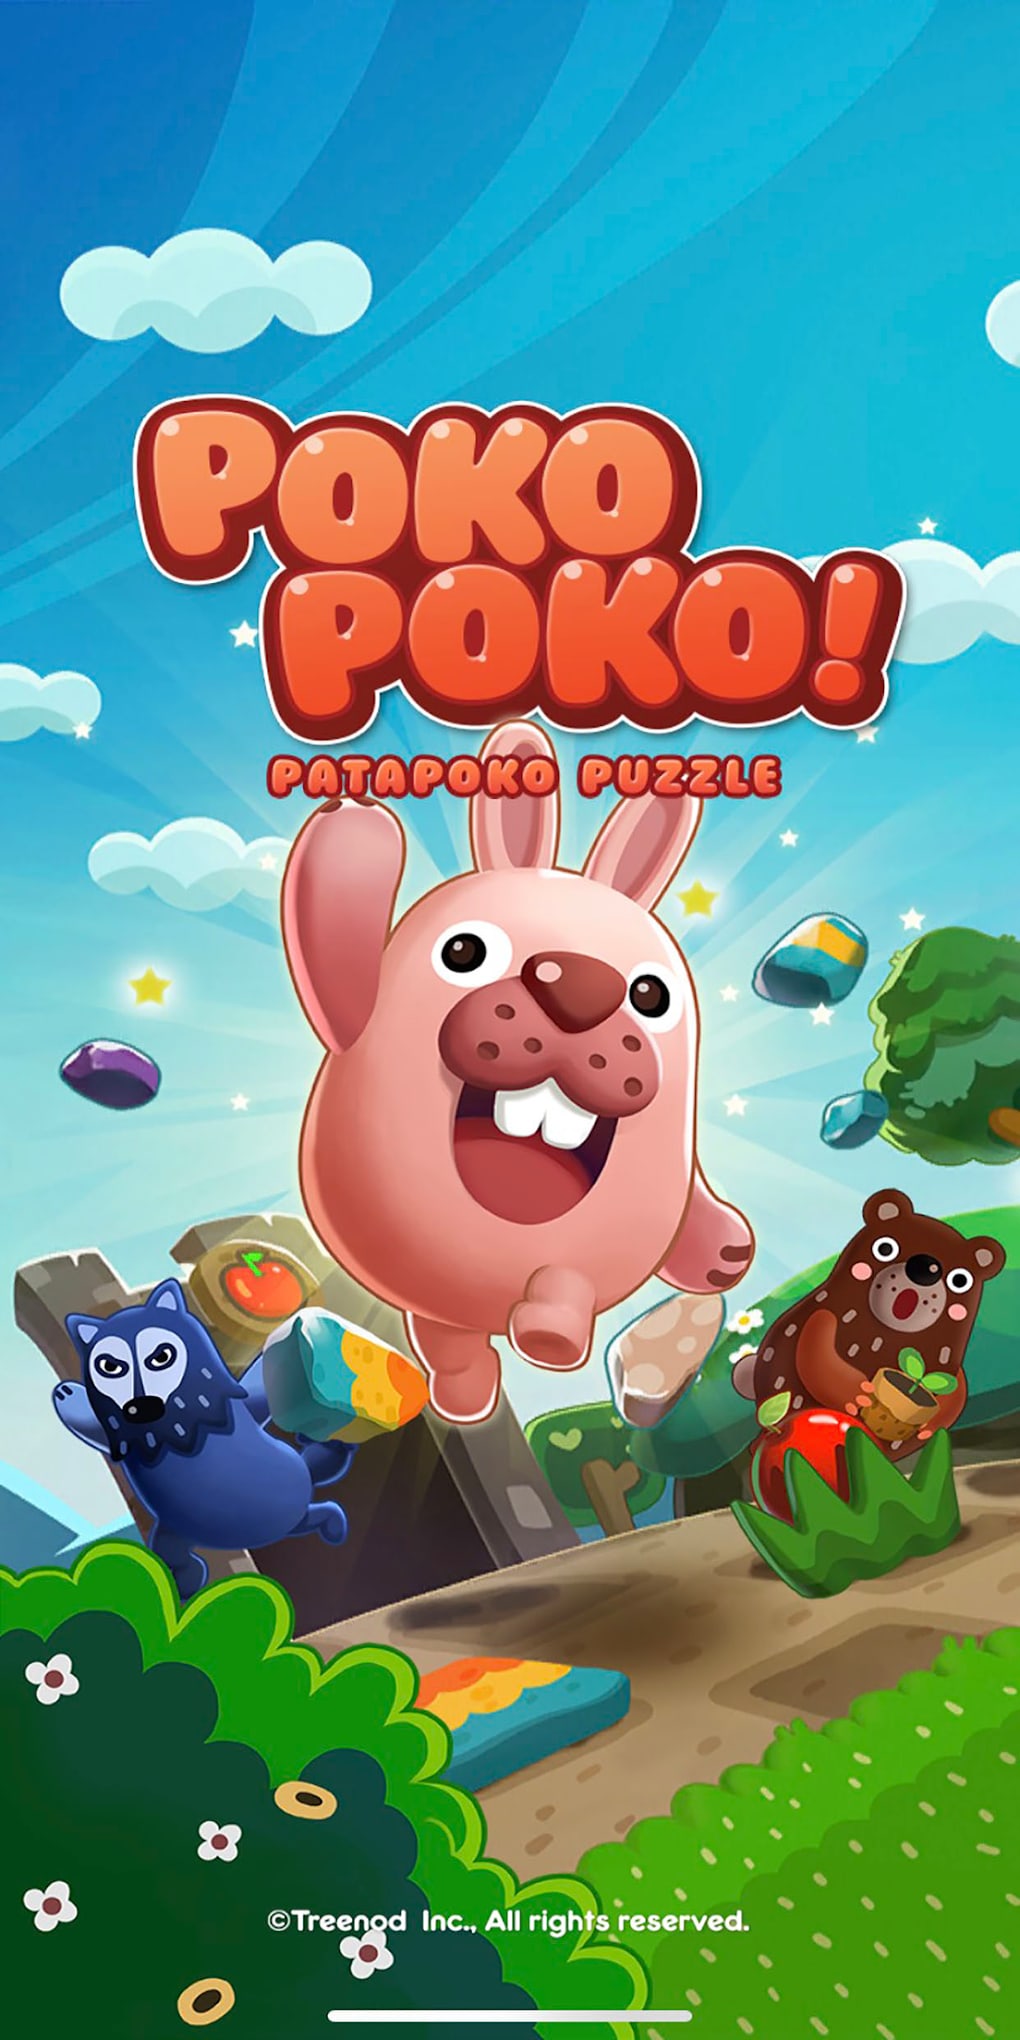 Poki Jogos Online - Arcade, Corrida, RPG e Ação APK (Android Game) - Free  Download